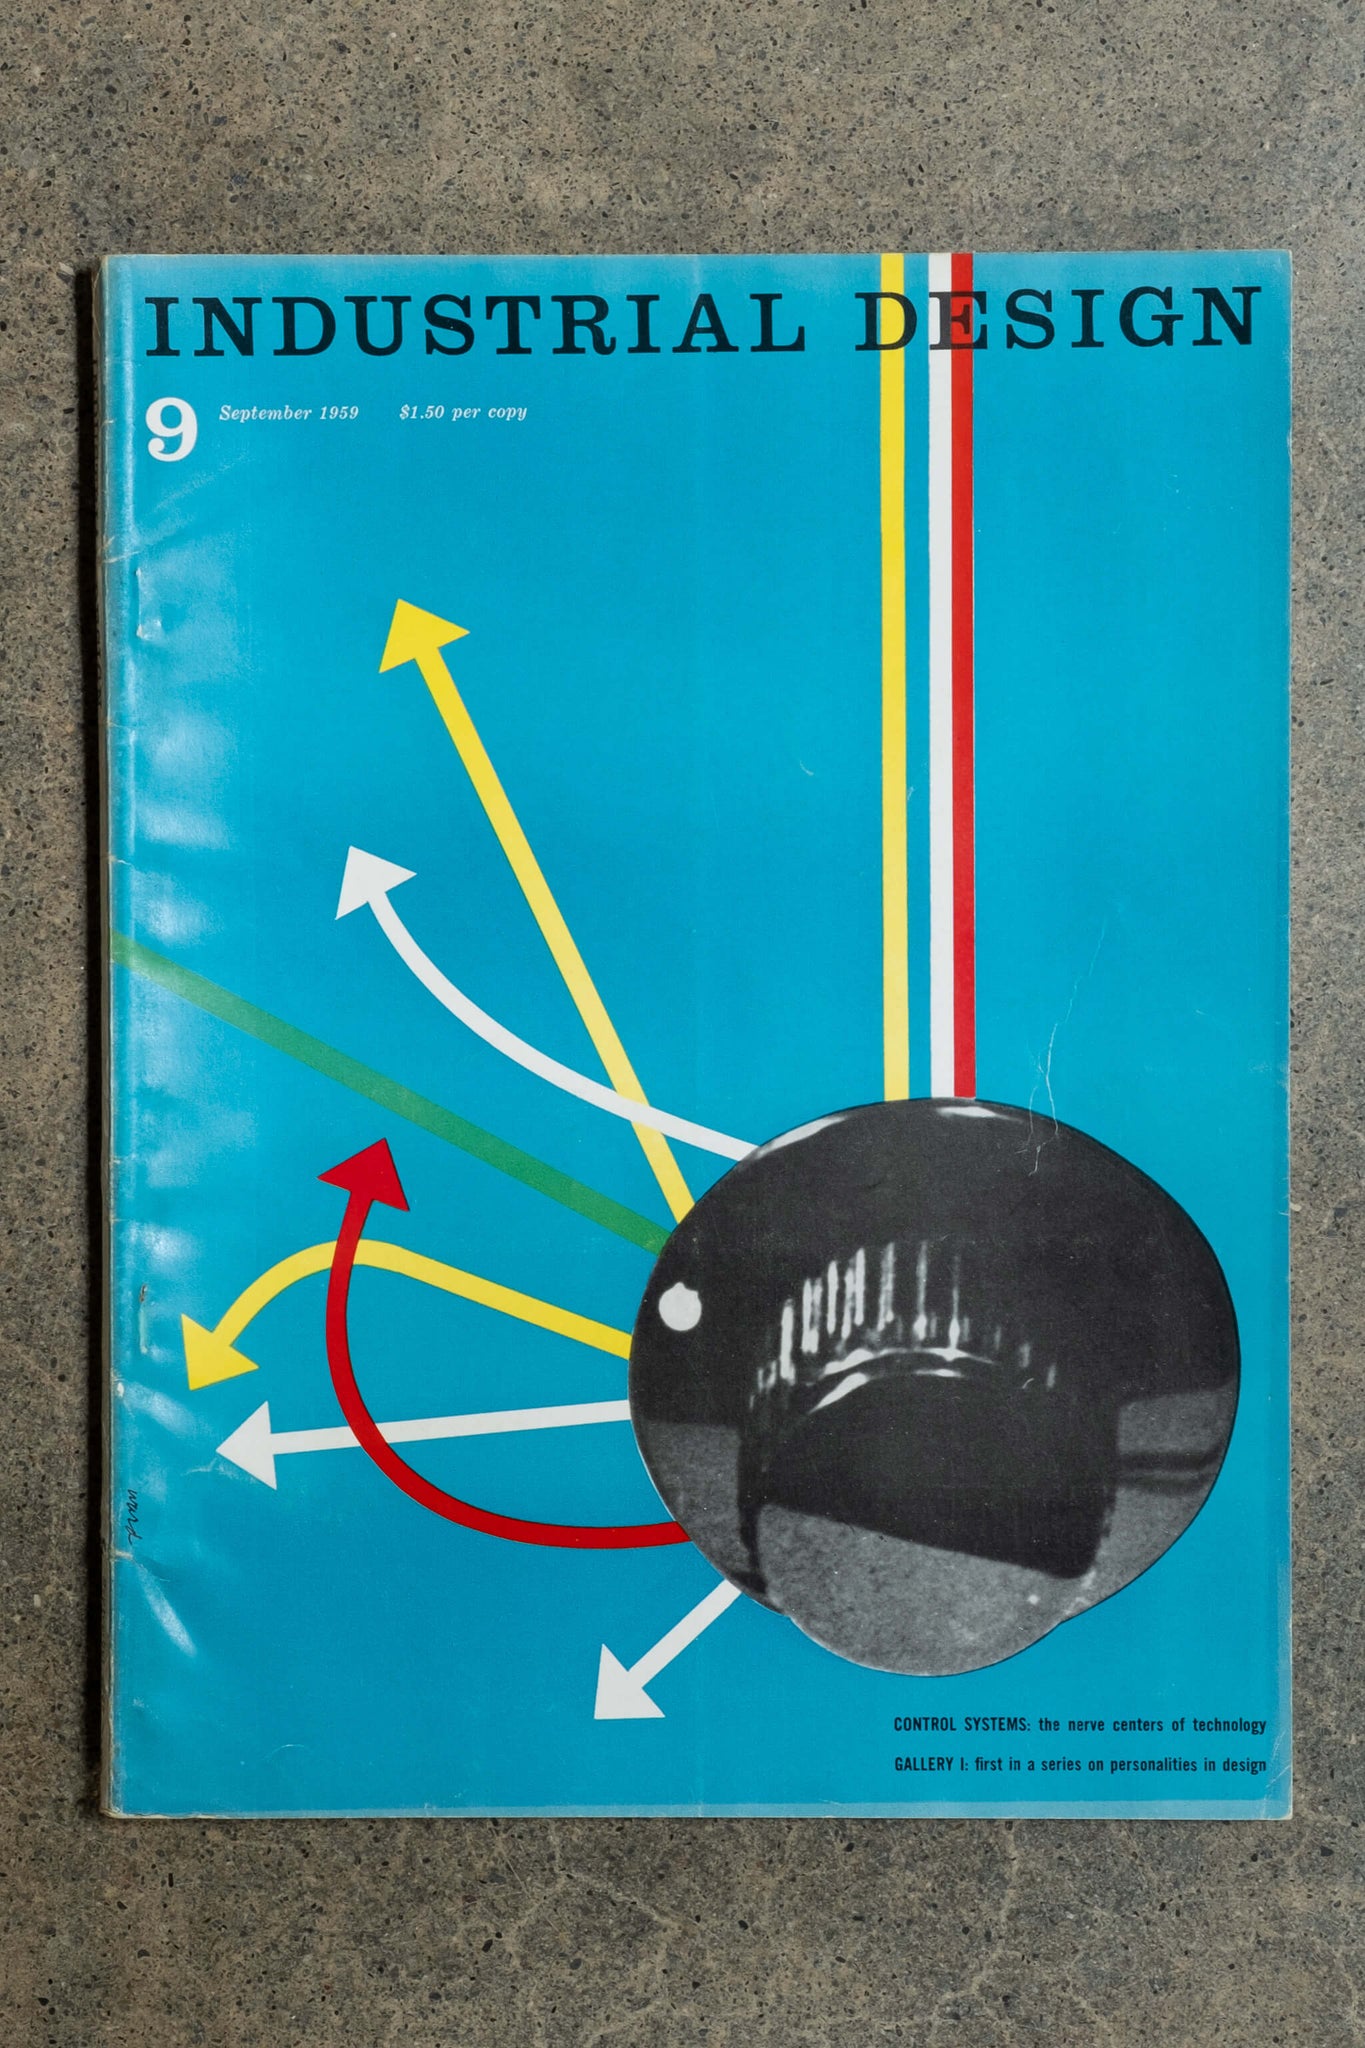 Industrial Design Vintage Magazine, September 1959